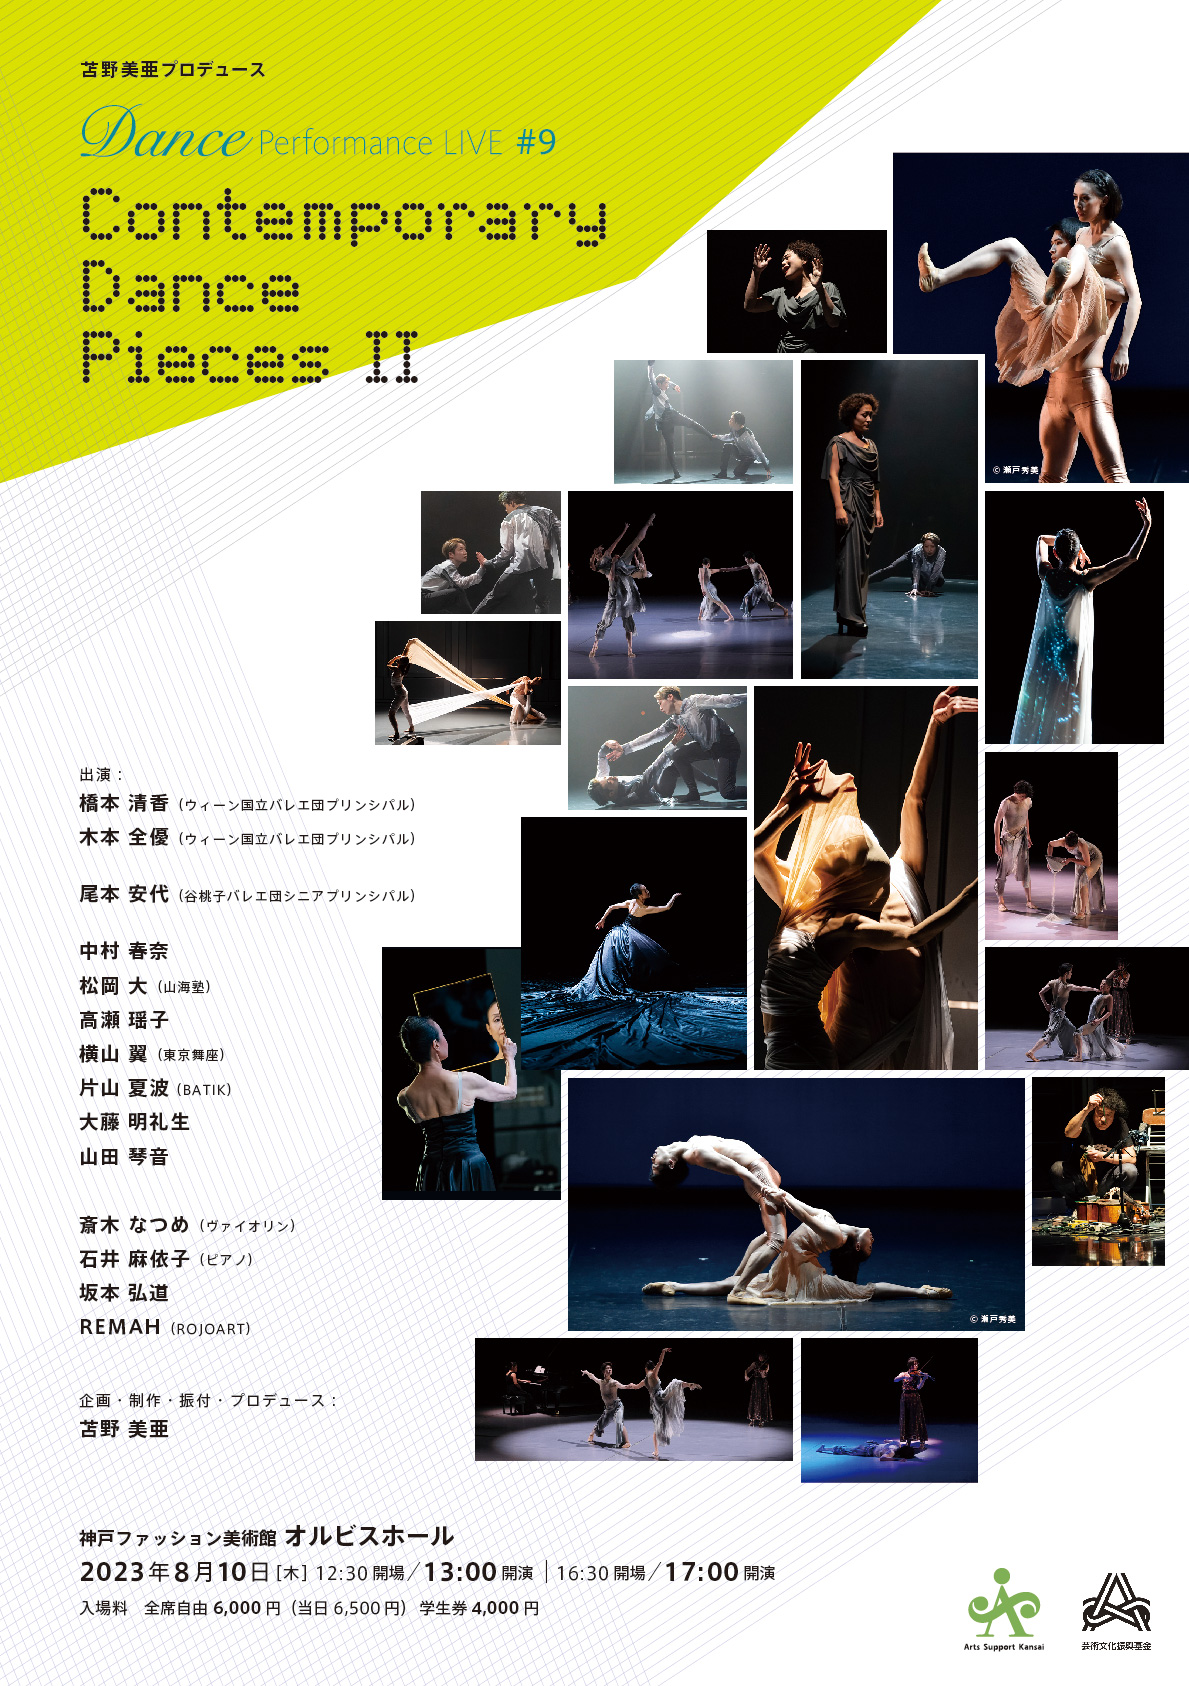 【オルビスホール情報】8/10(木)「苫野美亜プロデュース　 Dance Performance LIVE #9 Contemporary Dance Pieces Ⅱ」開催!